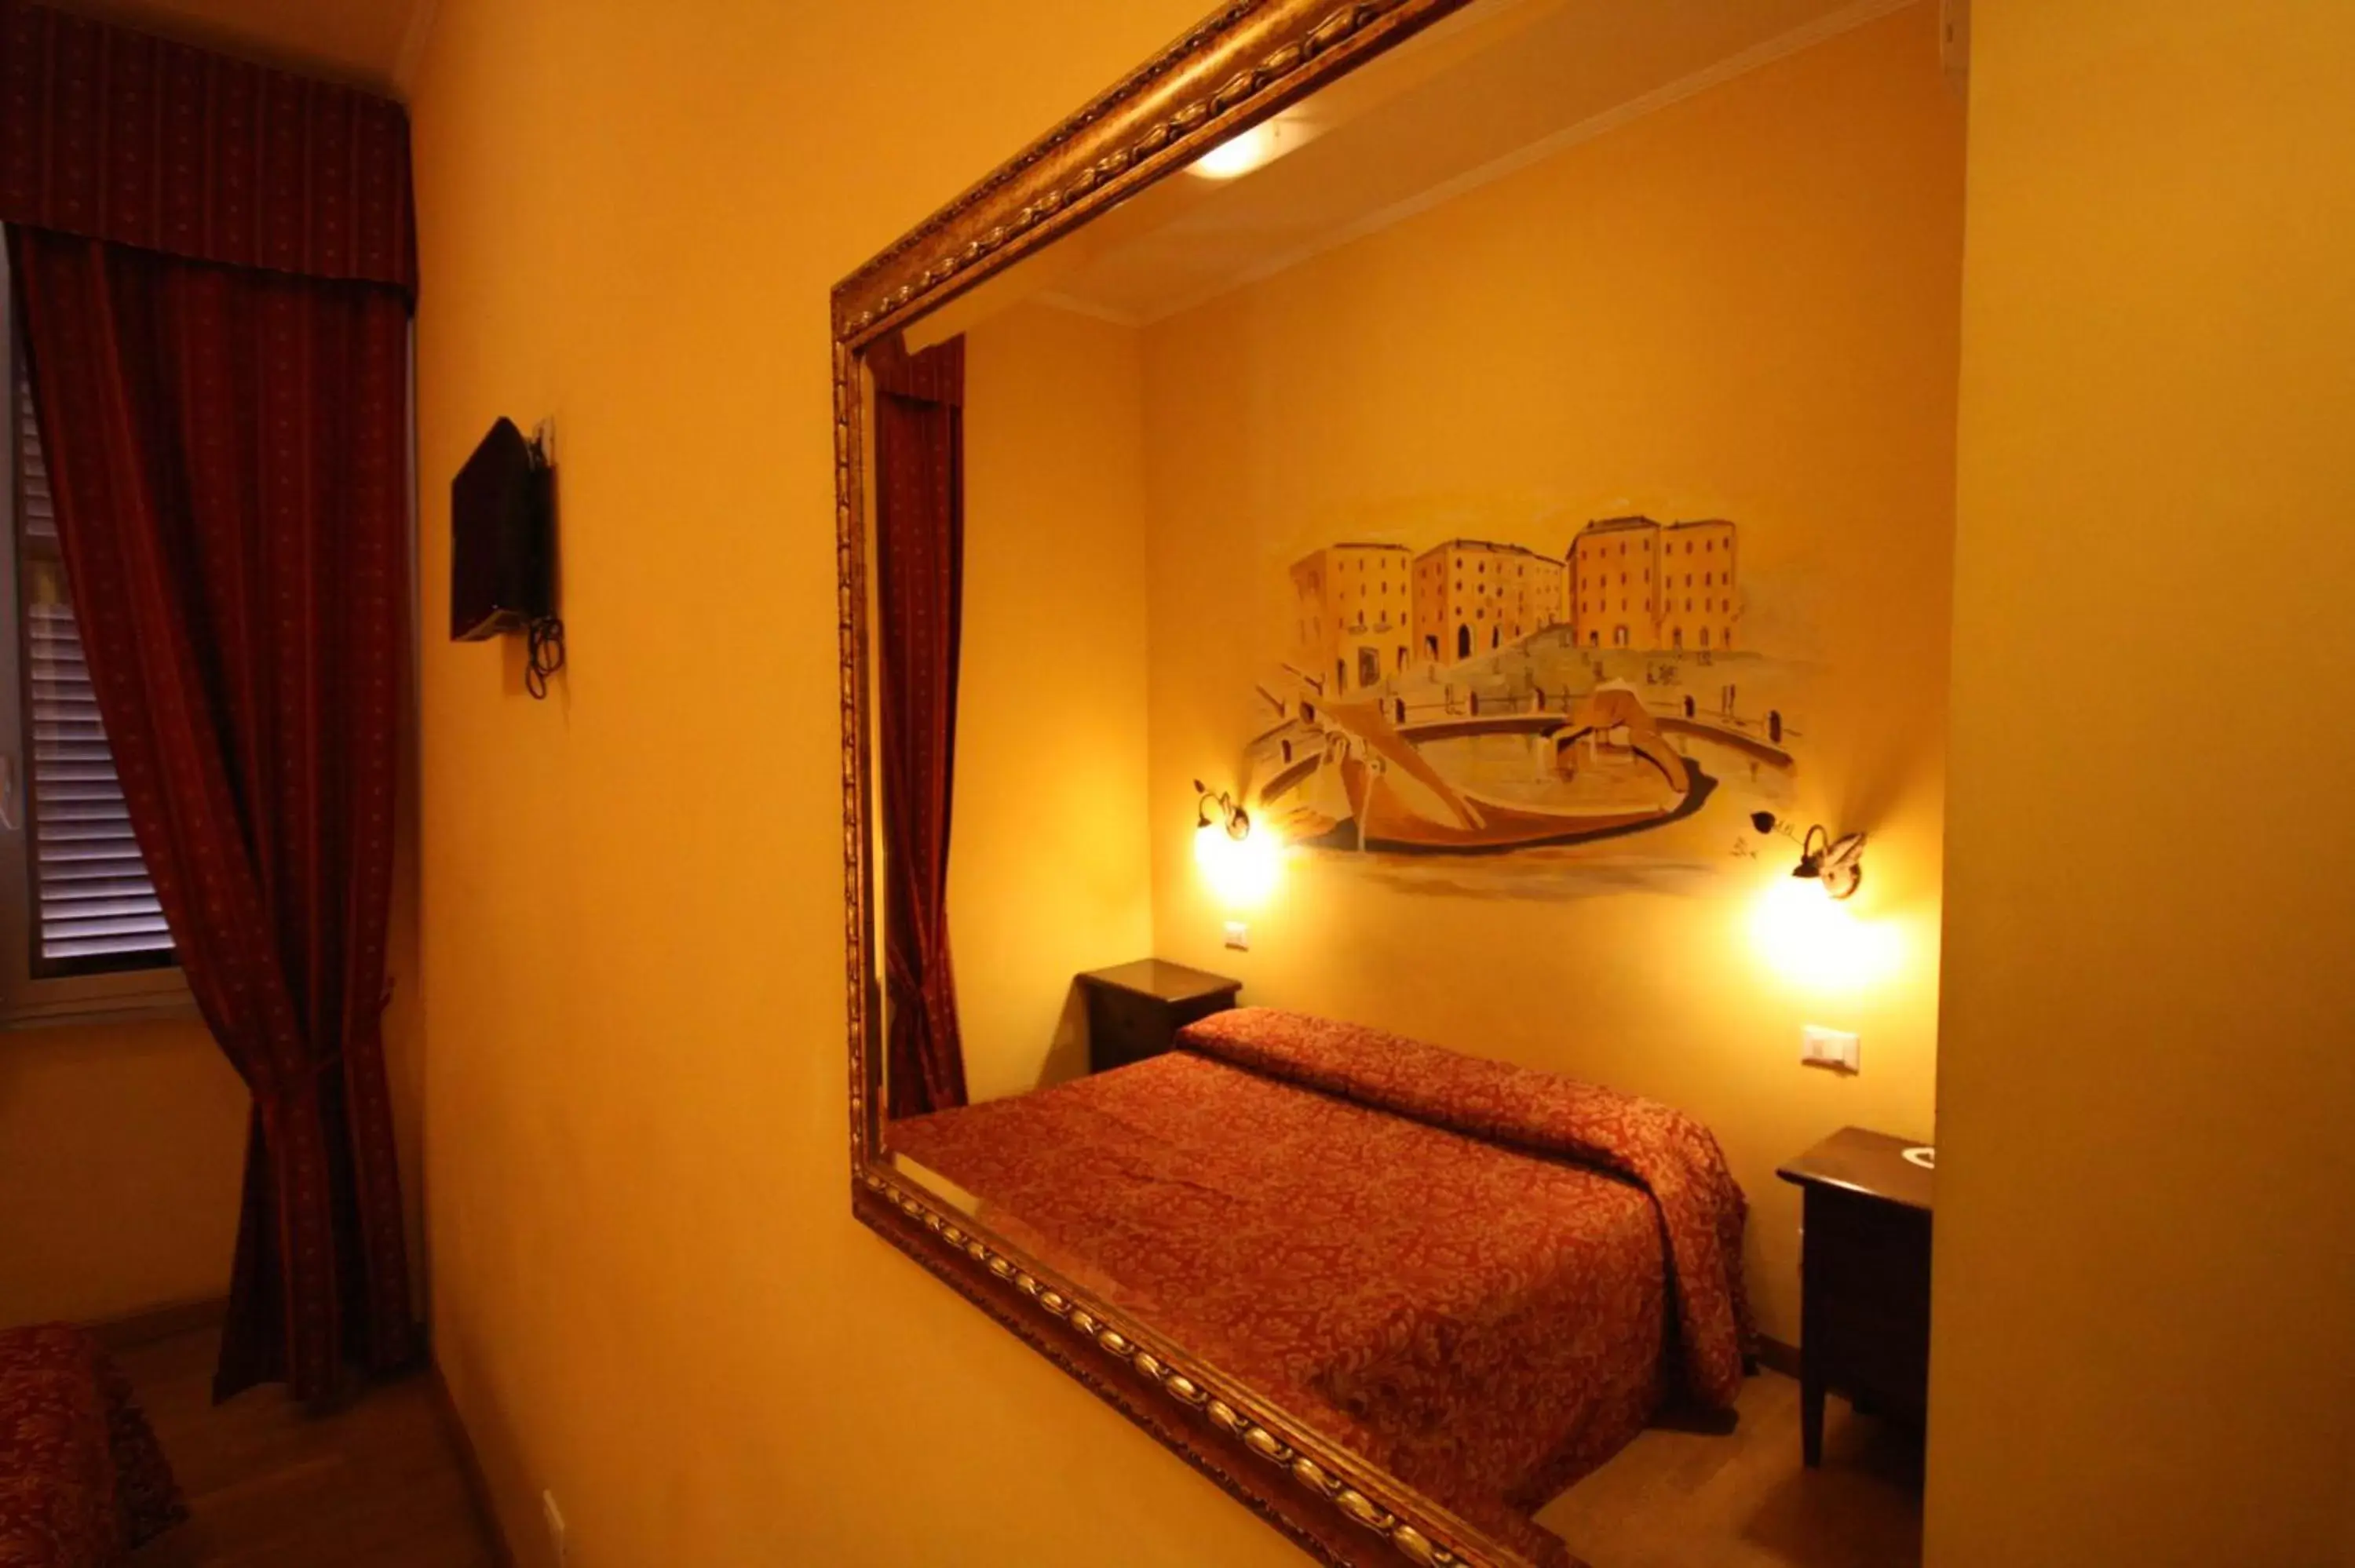 Decorative detail, Bed in Hotel Cherubini